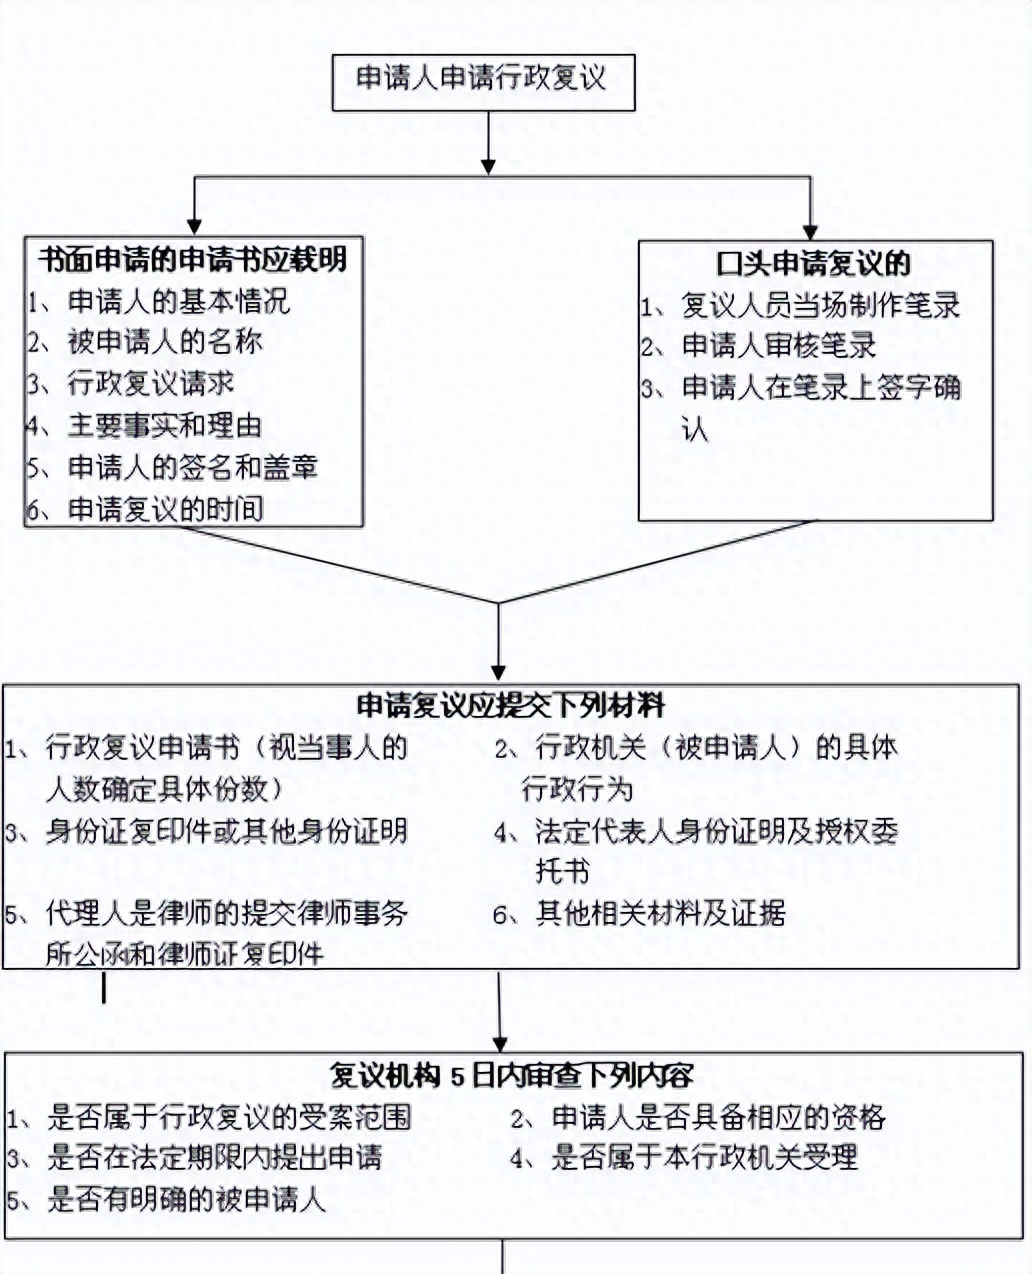 行政复议案件立案流程图1.jpg